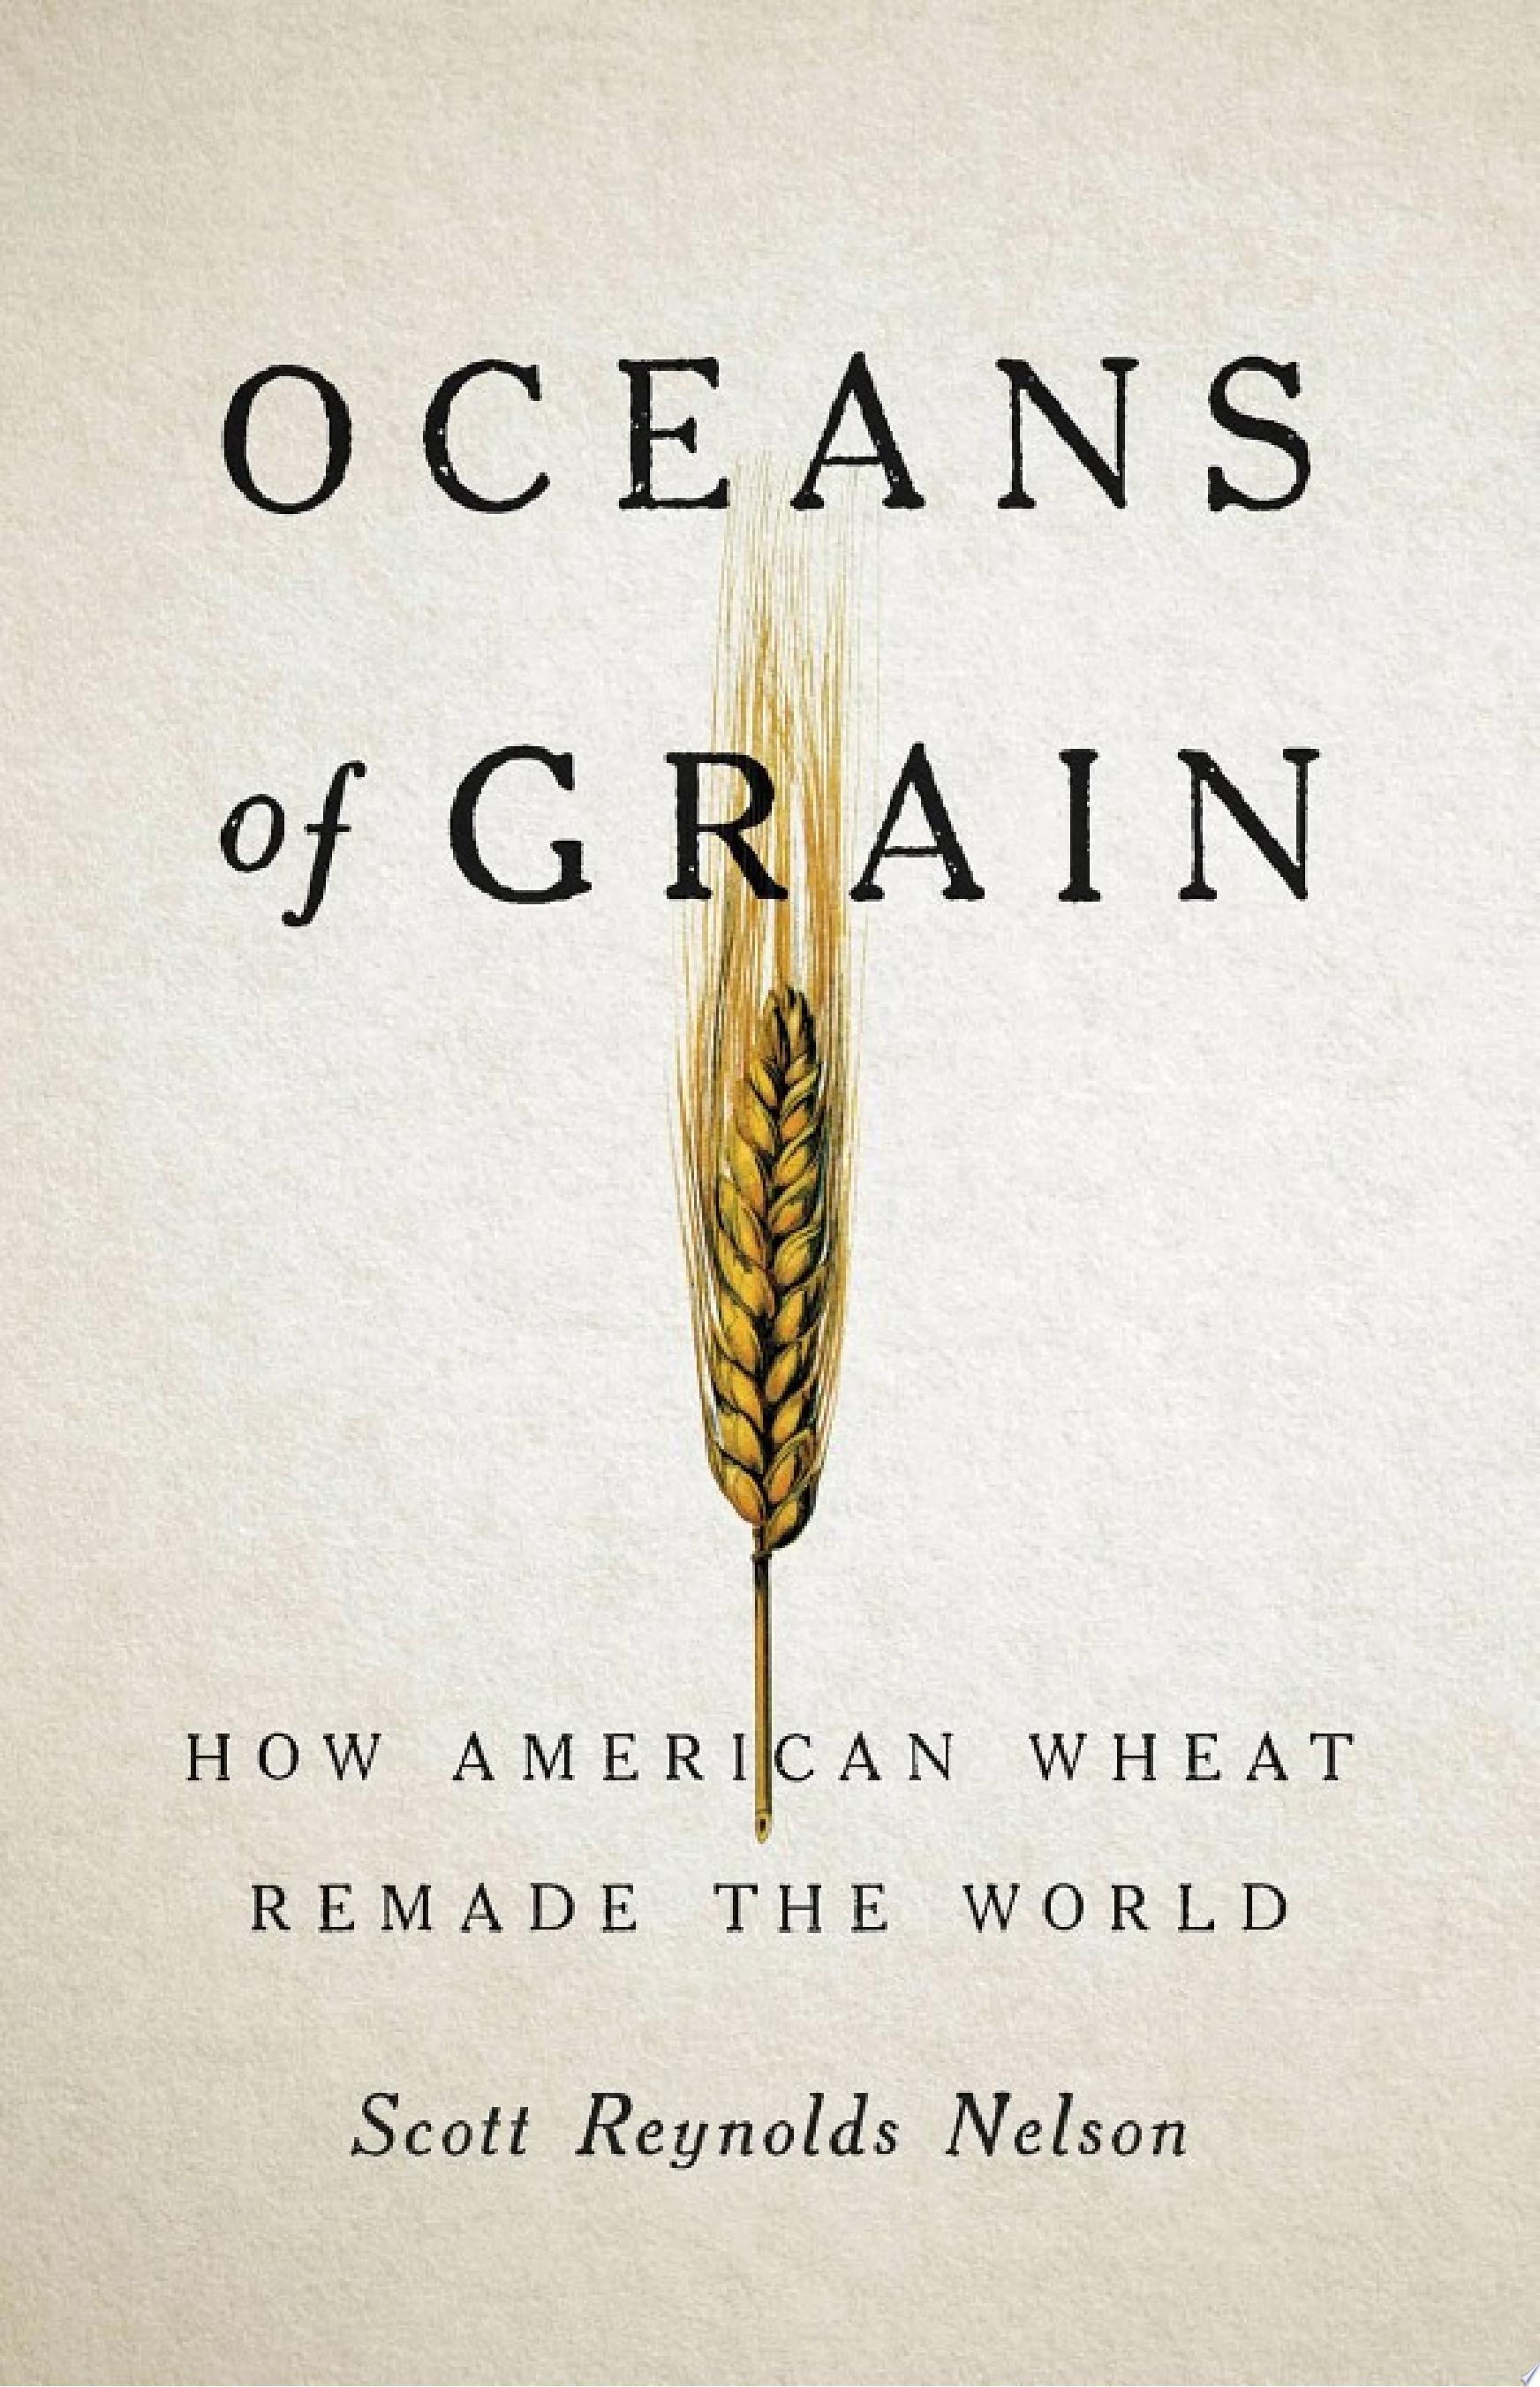 Image for "Oceans of Grain"